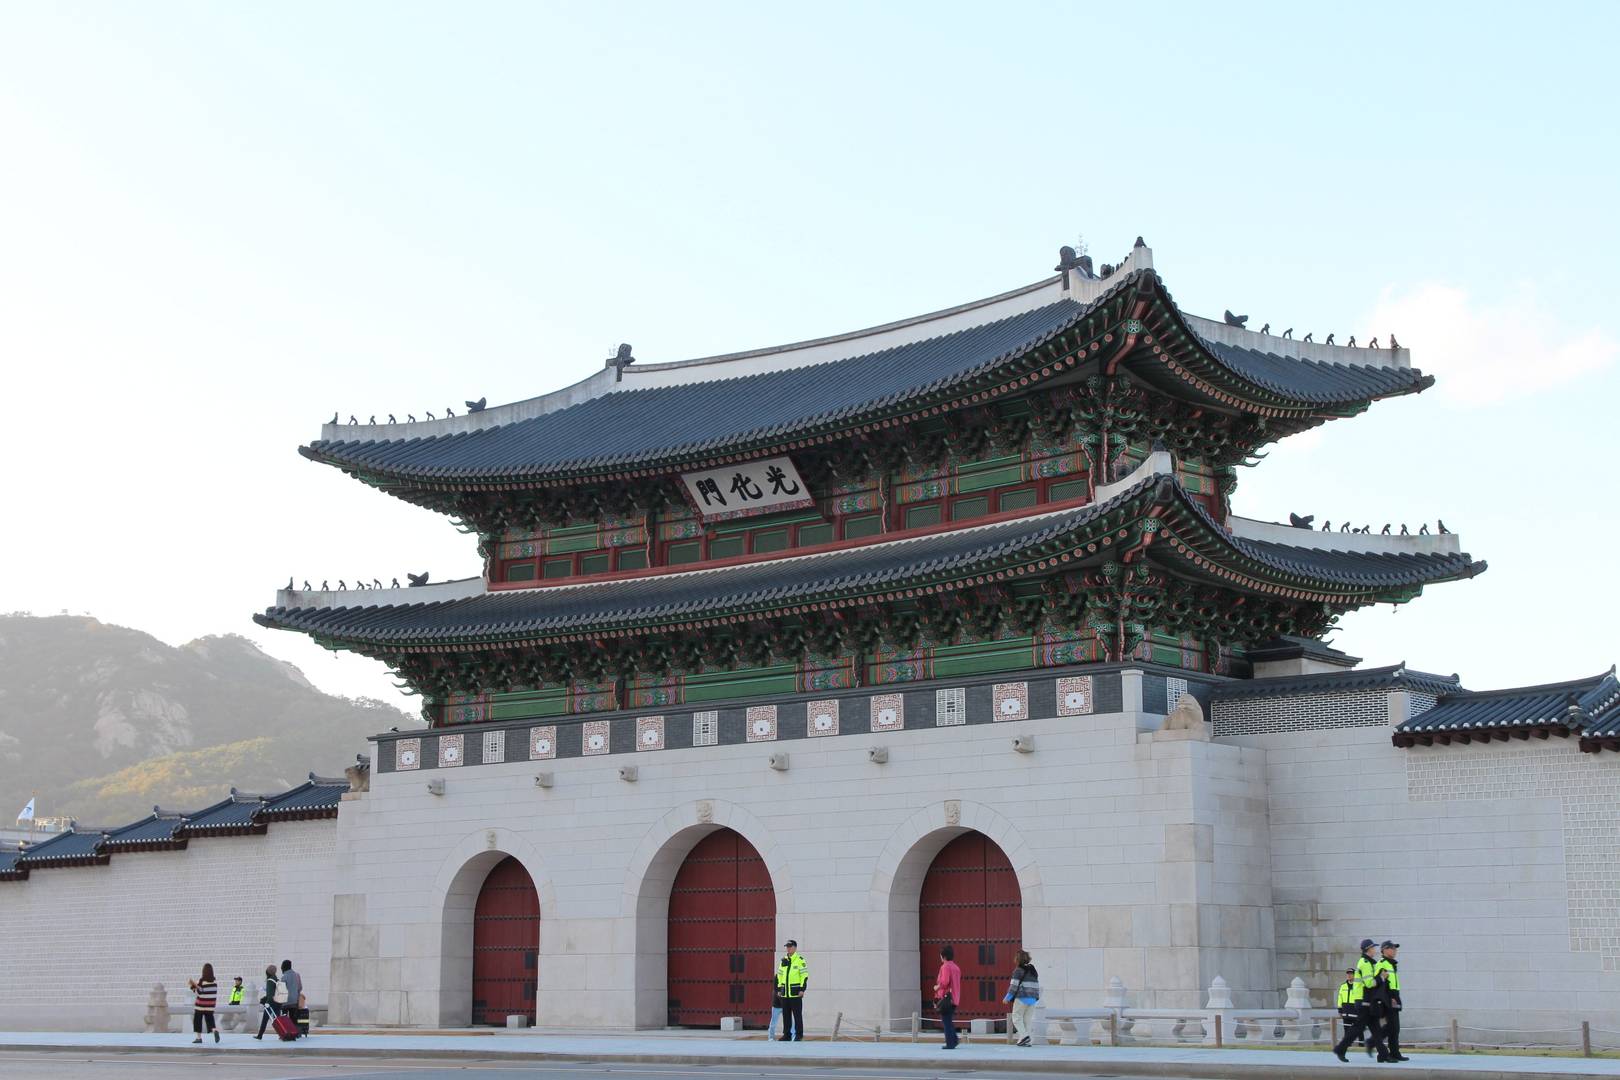 Южная Корея, Сеул